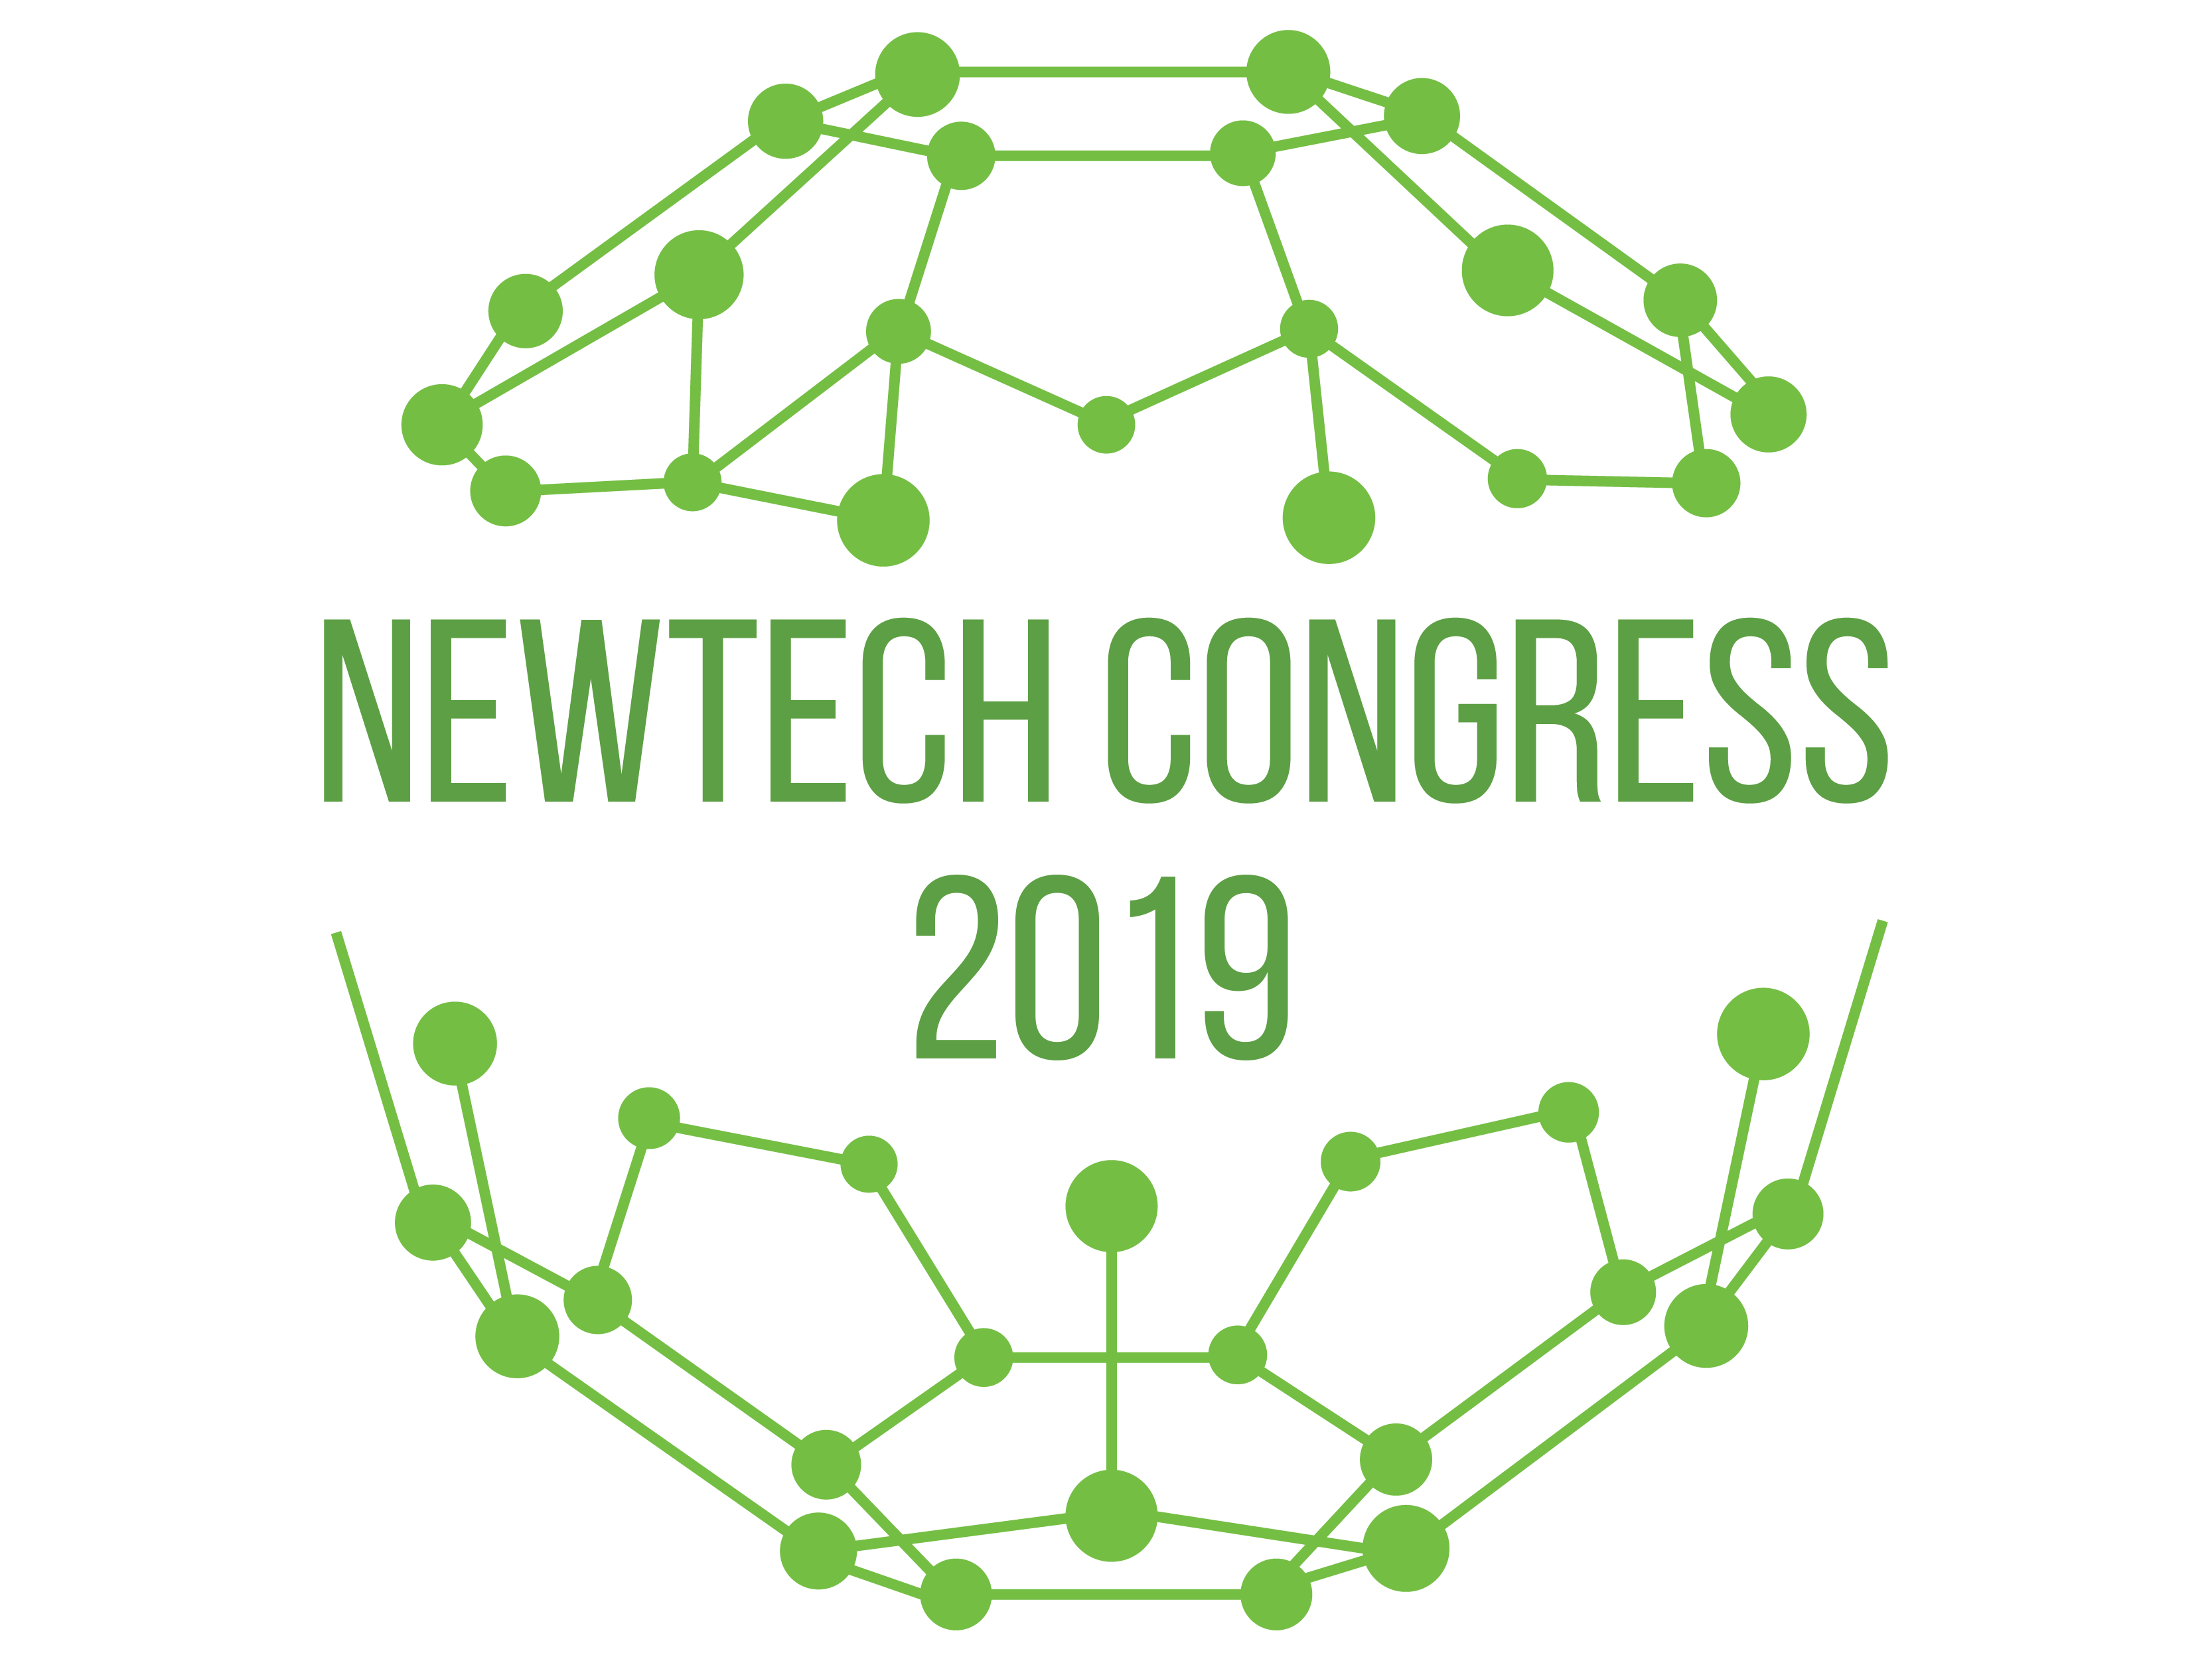 4th World Congress on 
New Technologies (NewTech'19)